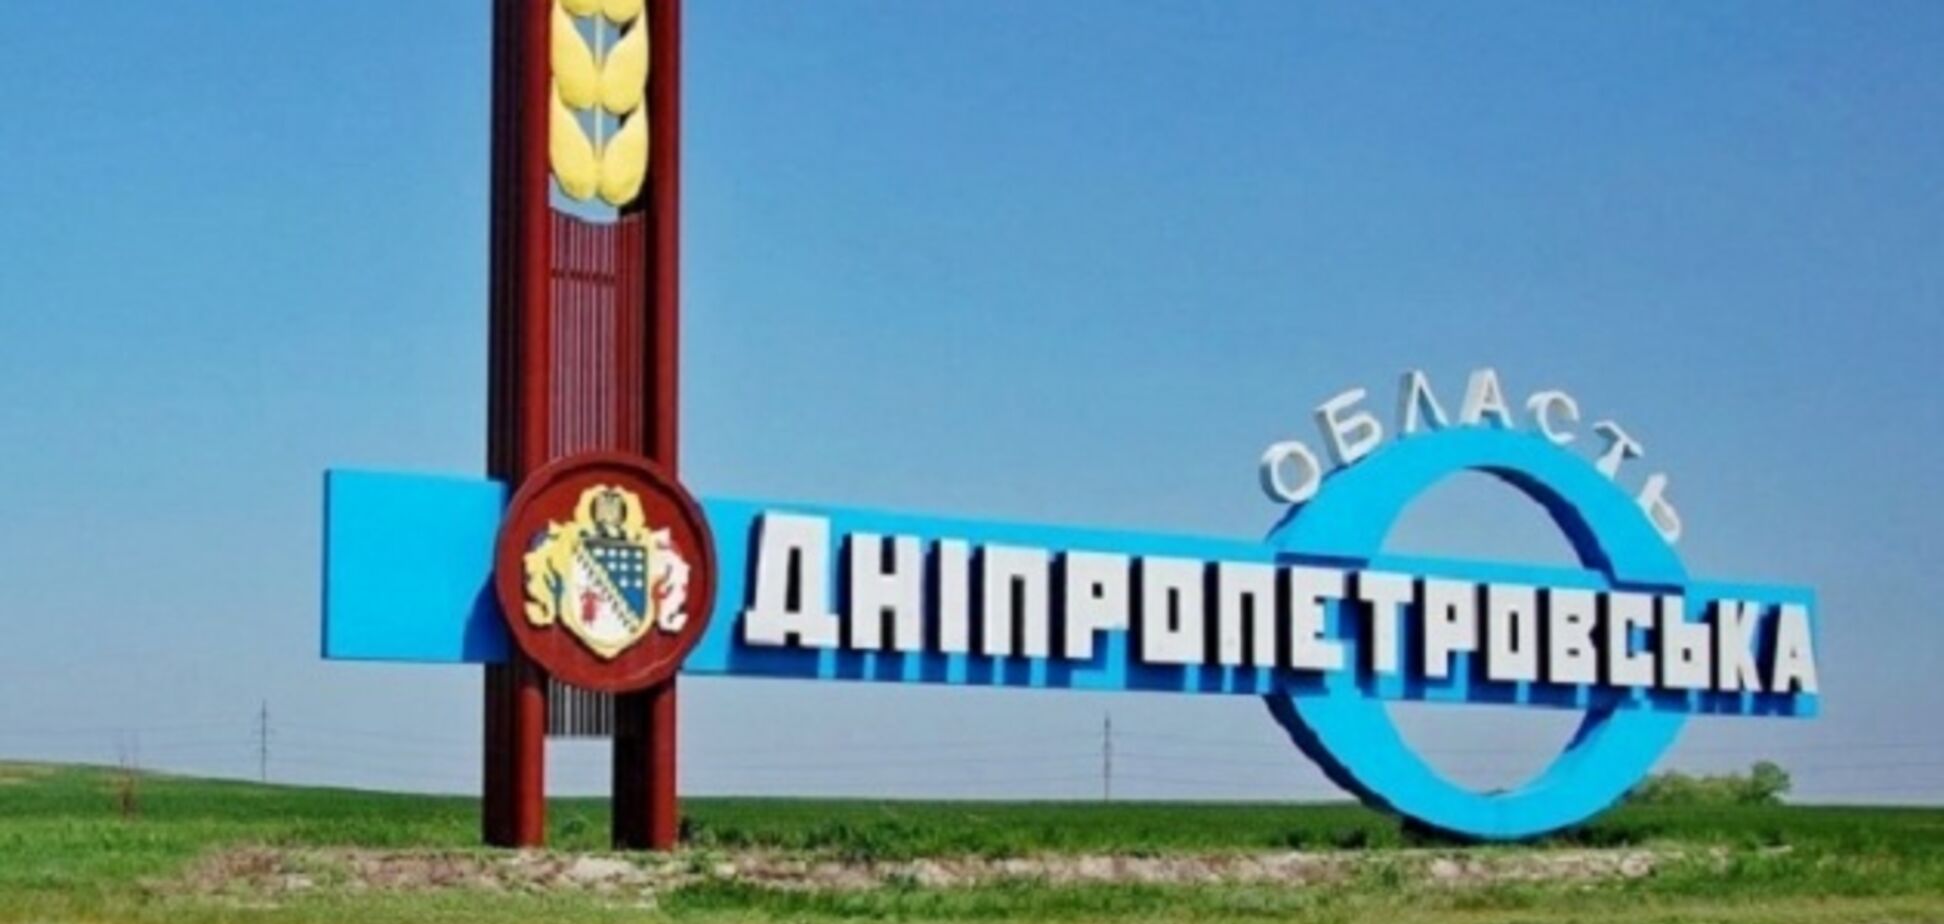 Порошенко запропонував нову назву для Дніпропетровської області